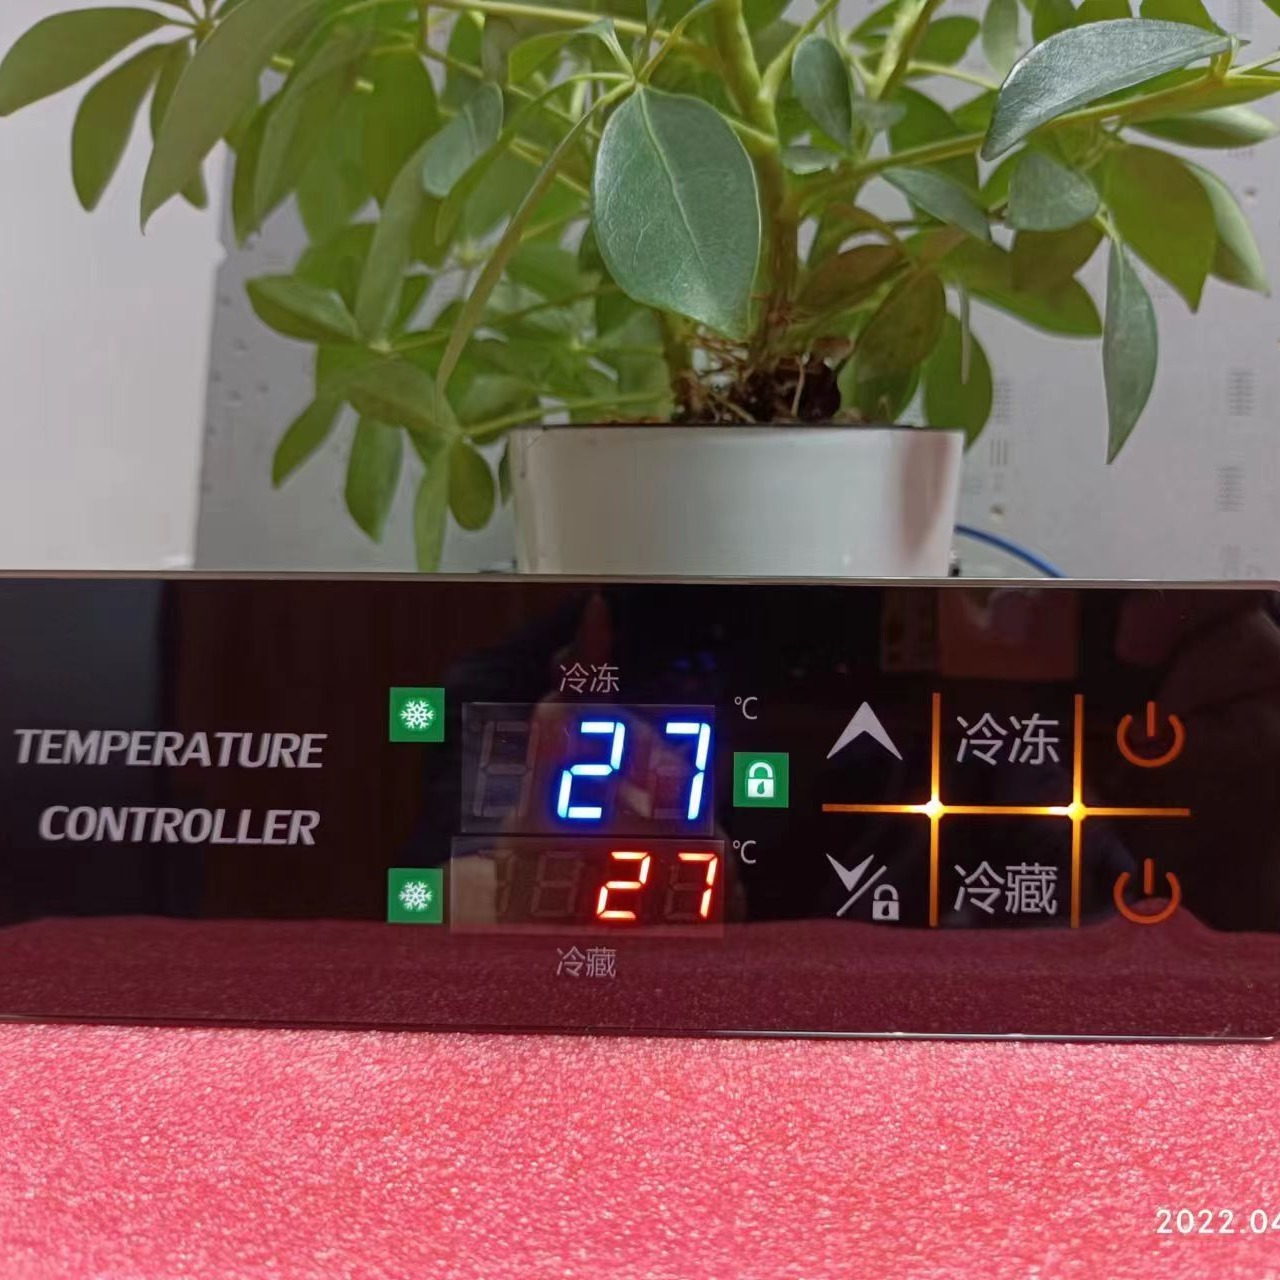 温度控制器  KR-722  特点：温度显示 双温控制 故障自诊断